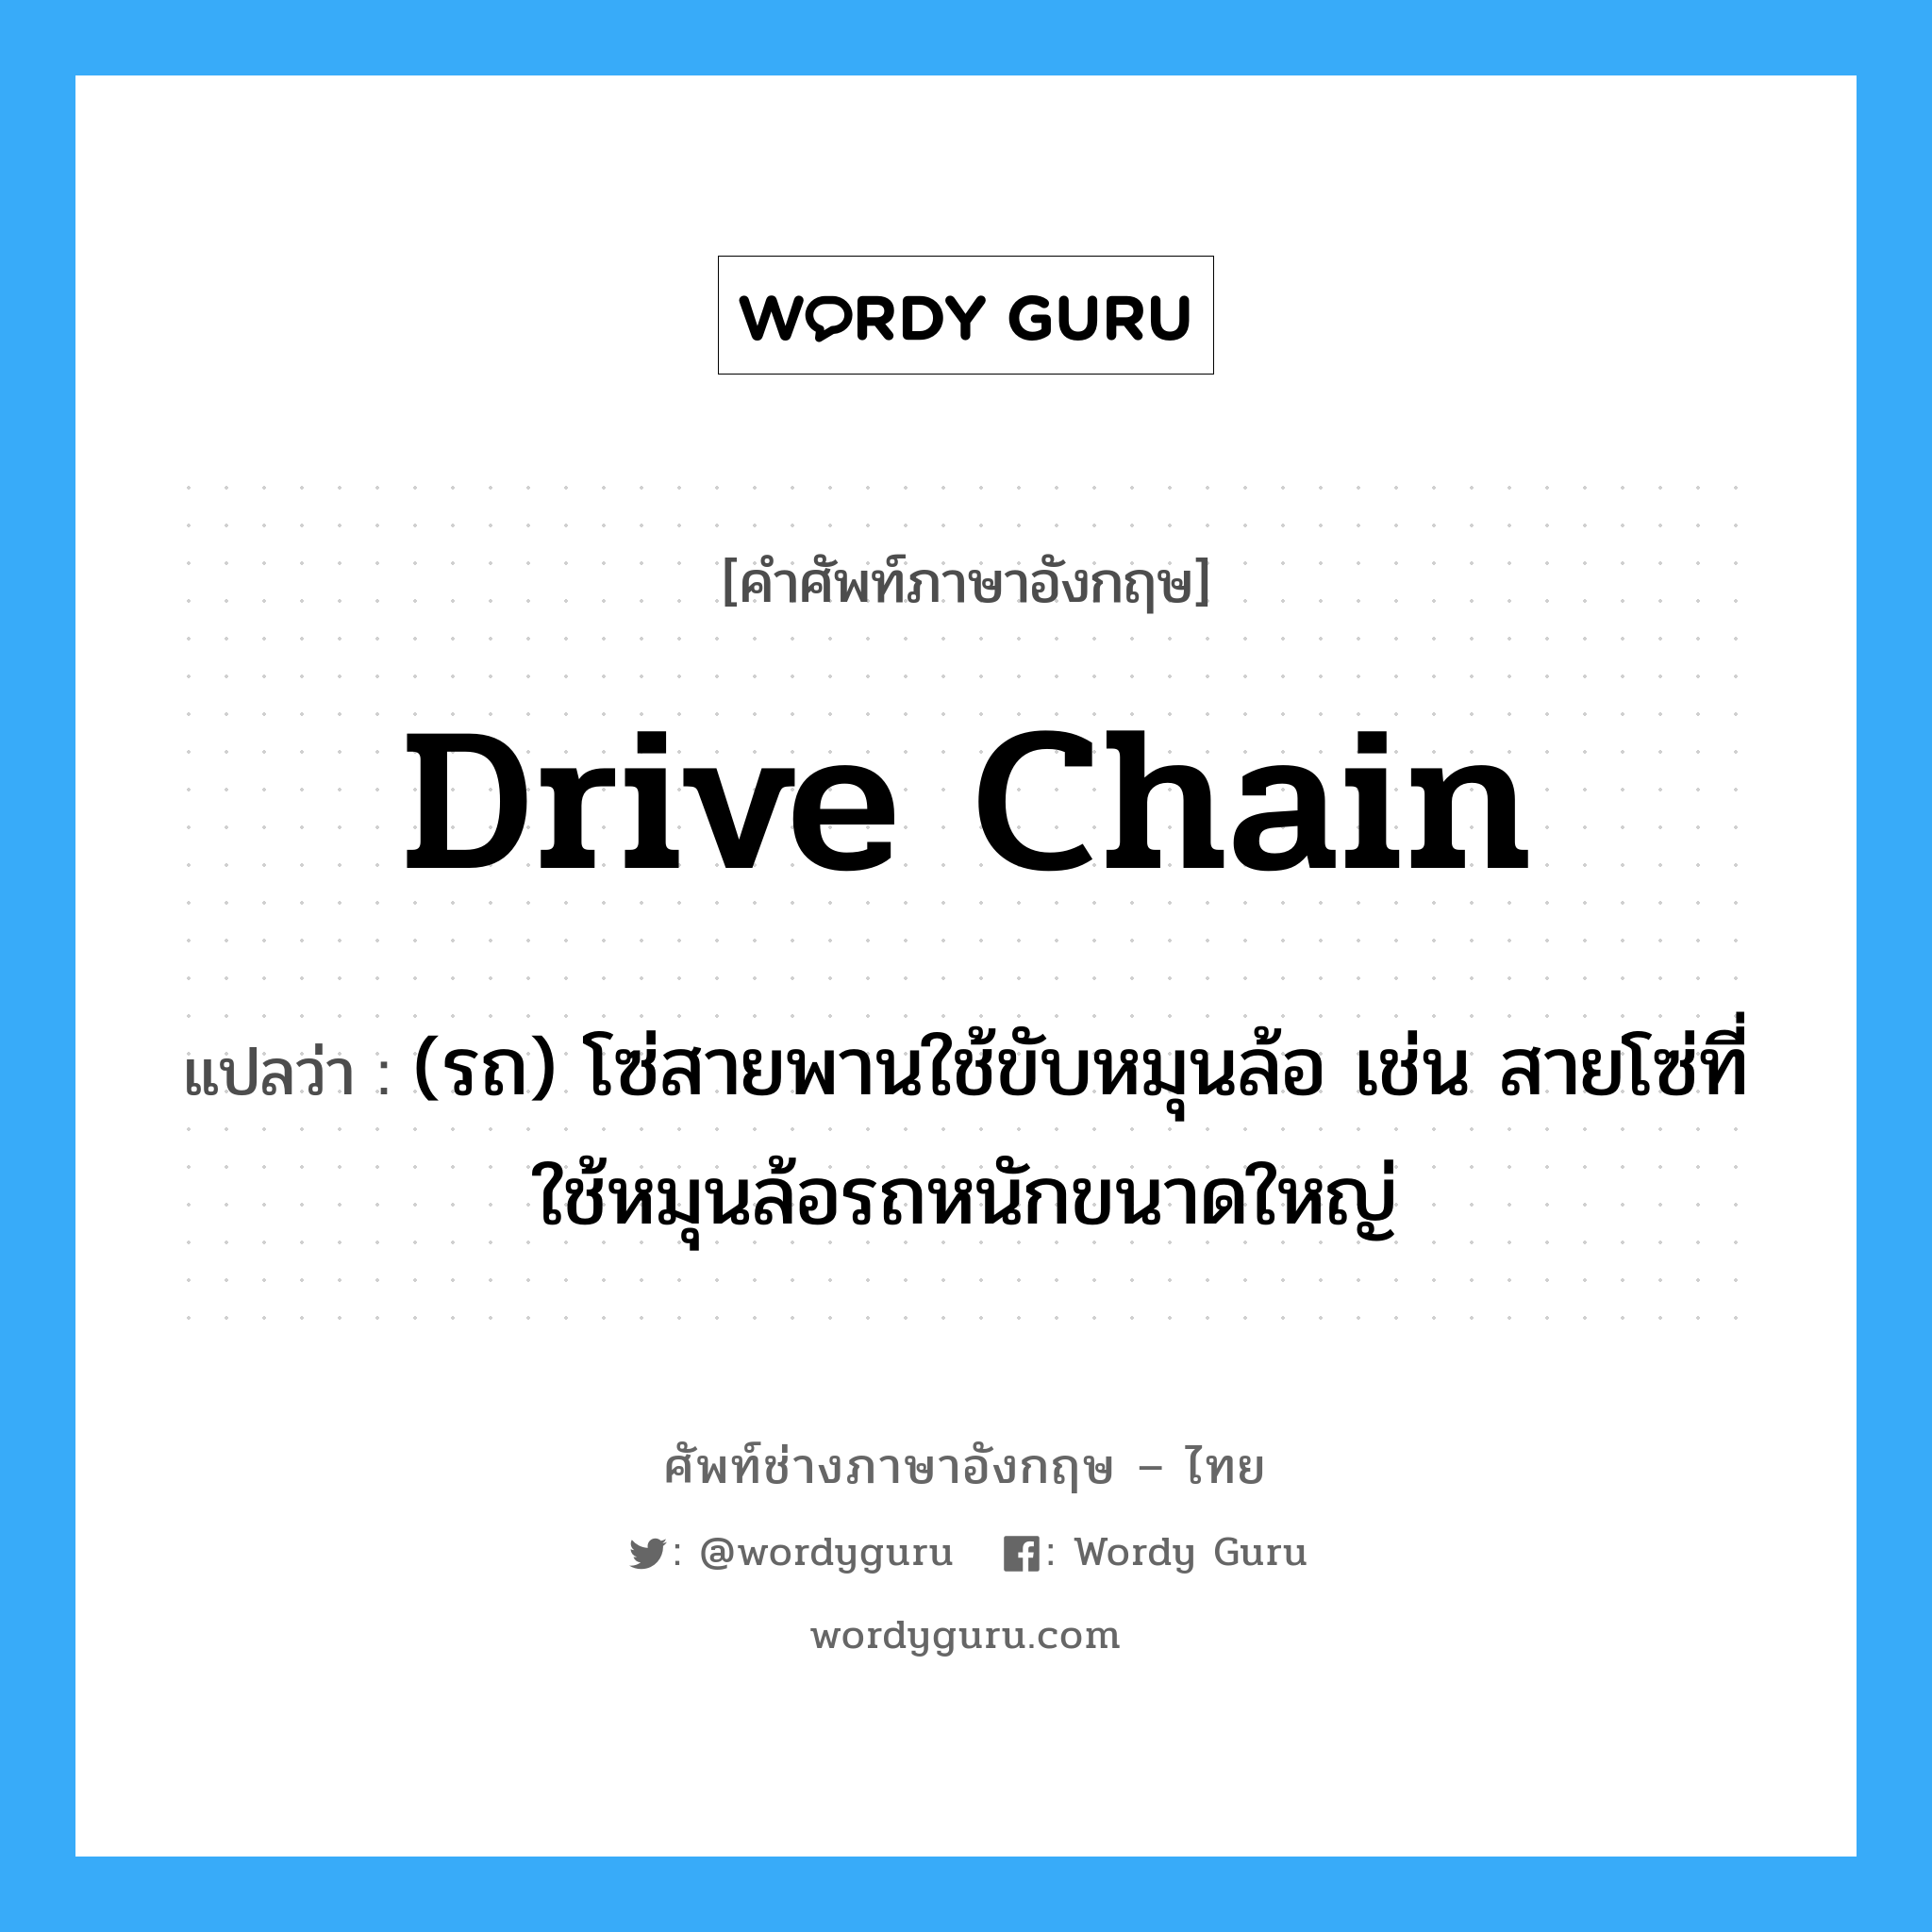 drive chain แปลว่า?, คำศัพท์ช่างภาษาอังกฤษ - ไทย drive chain คำศัพท์ภาษาอังกฤษ drive chain แปลว่า (รถ) โซ่สายพานใช้ขับหมุนล้อ เช่น สายโซ่ที่ใช้หมุนล้อรถหนักขนาดใหญ่